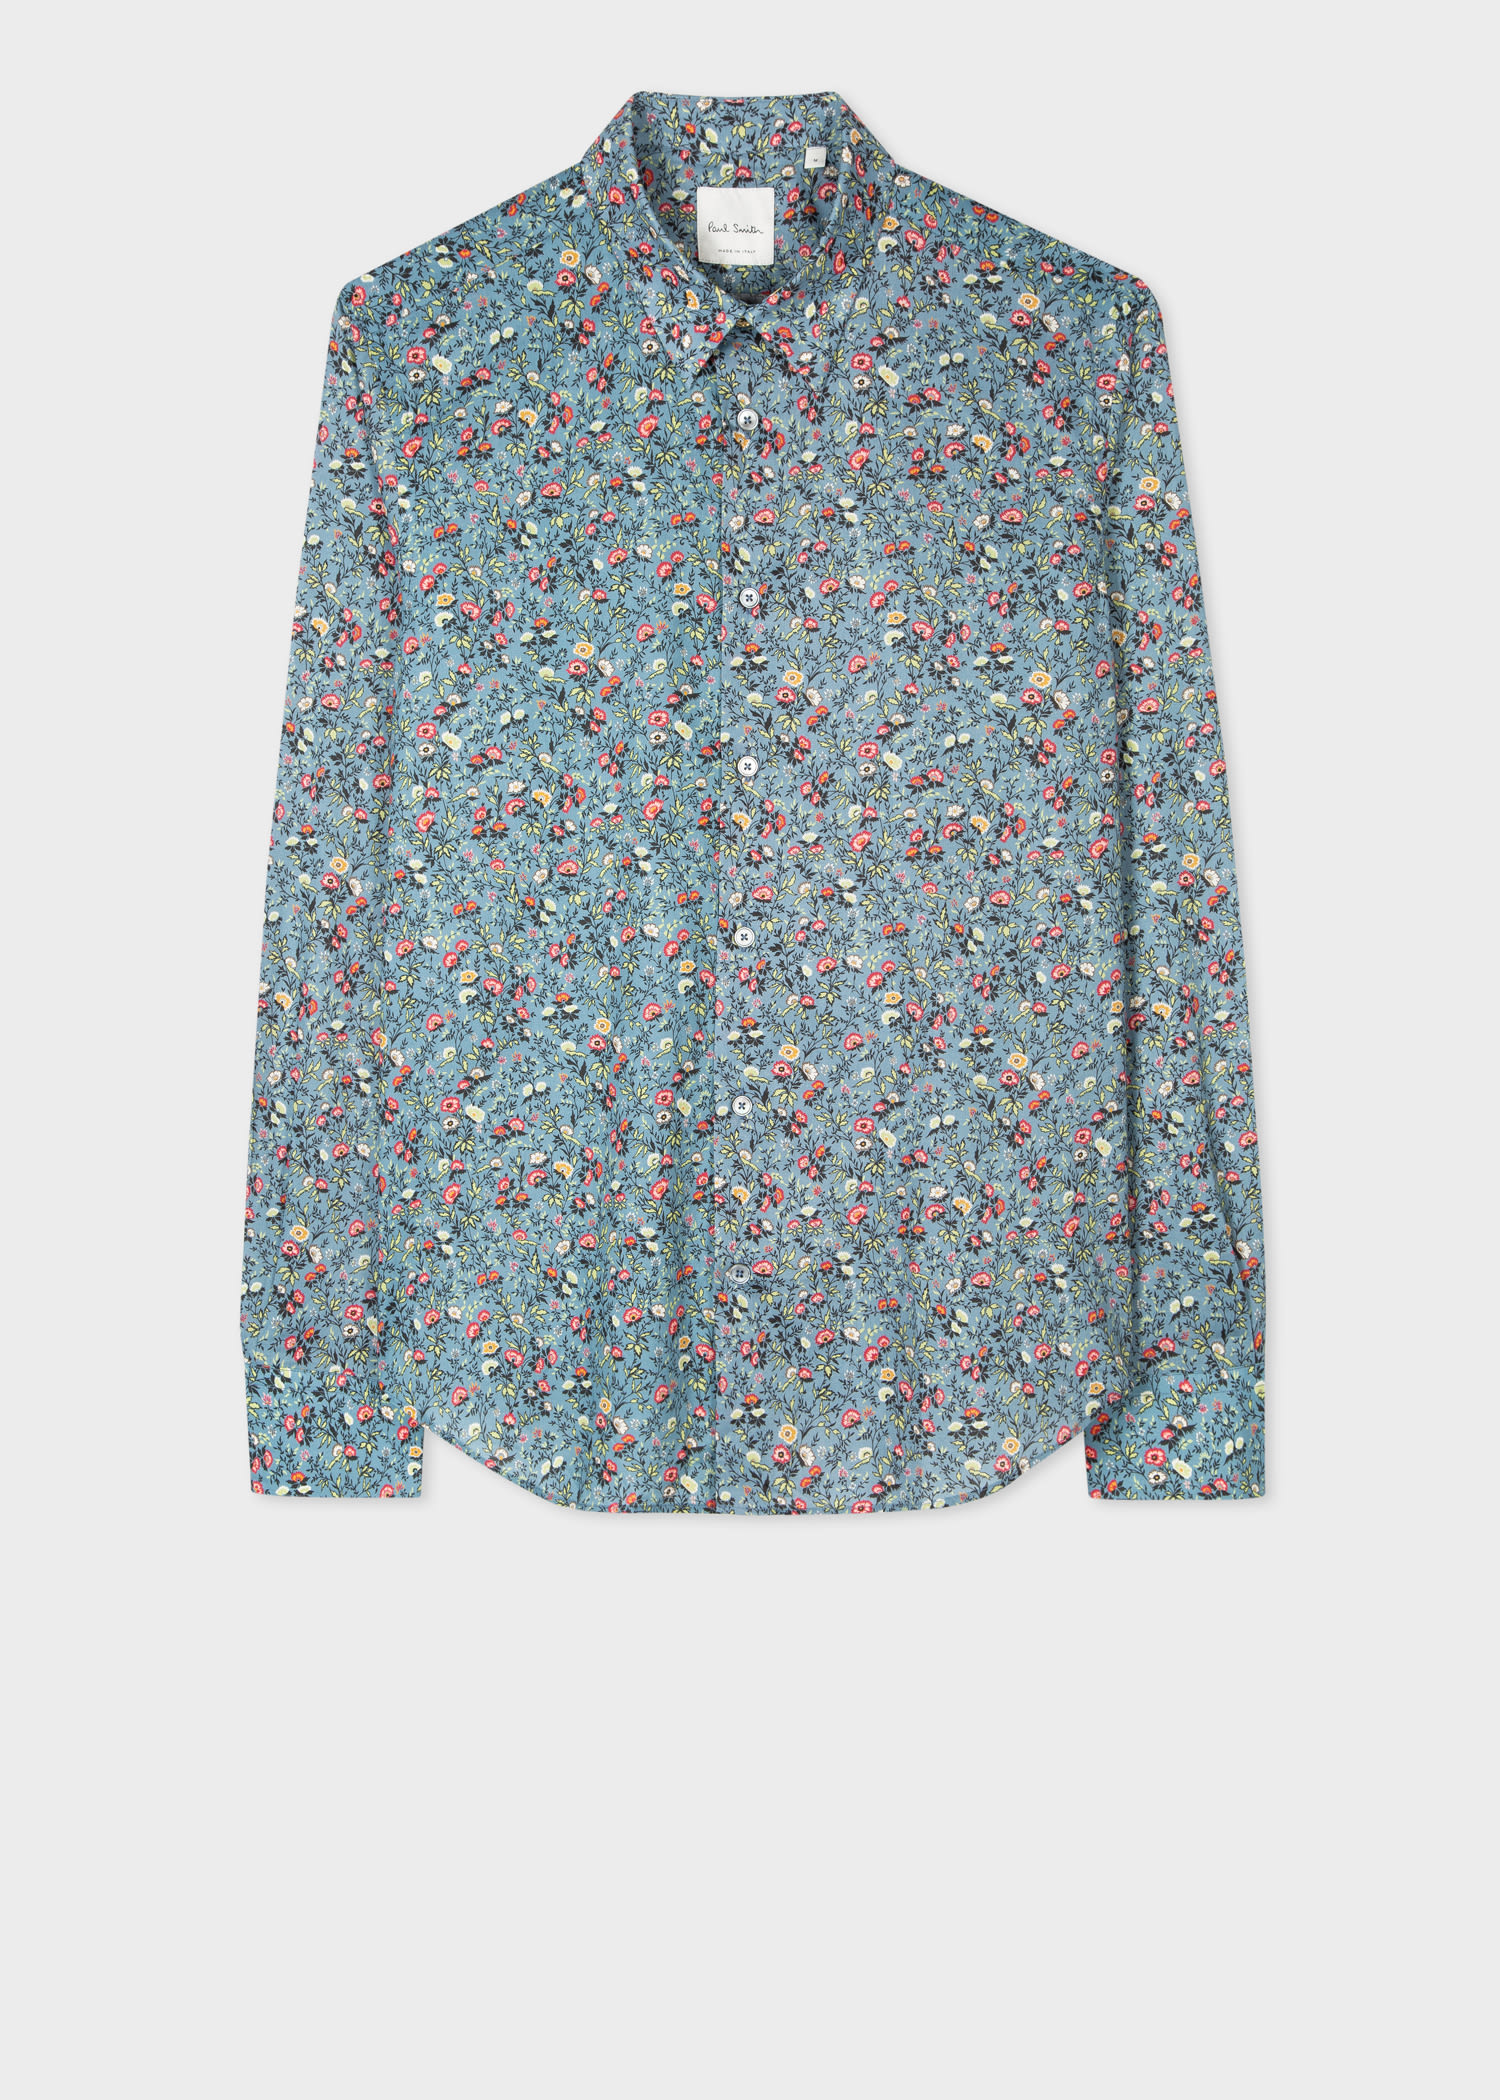 Floral Pattern Mens Shirts - Summer Mens Fancy Floral Pattern Short ...